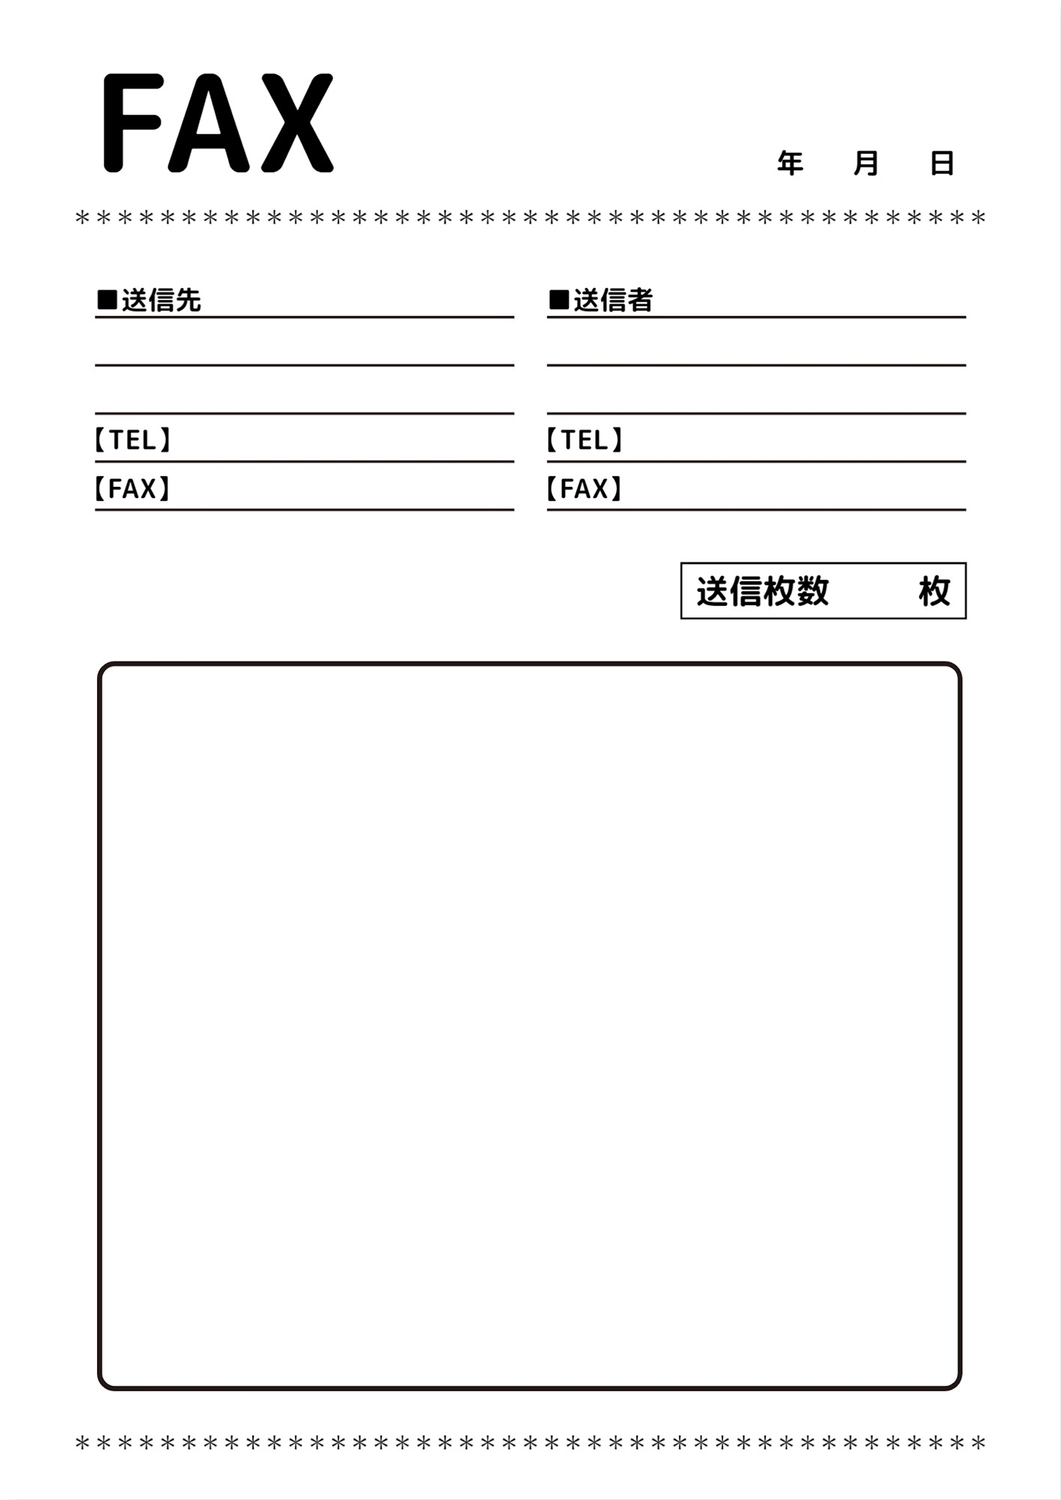 FAX送付状（枠・フレーム）, A4文書, 印刷, ファックス, A4文書テンプレート